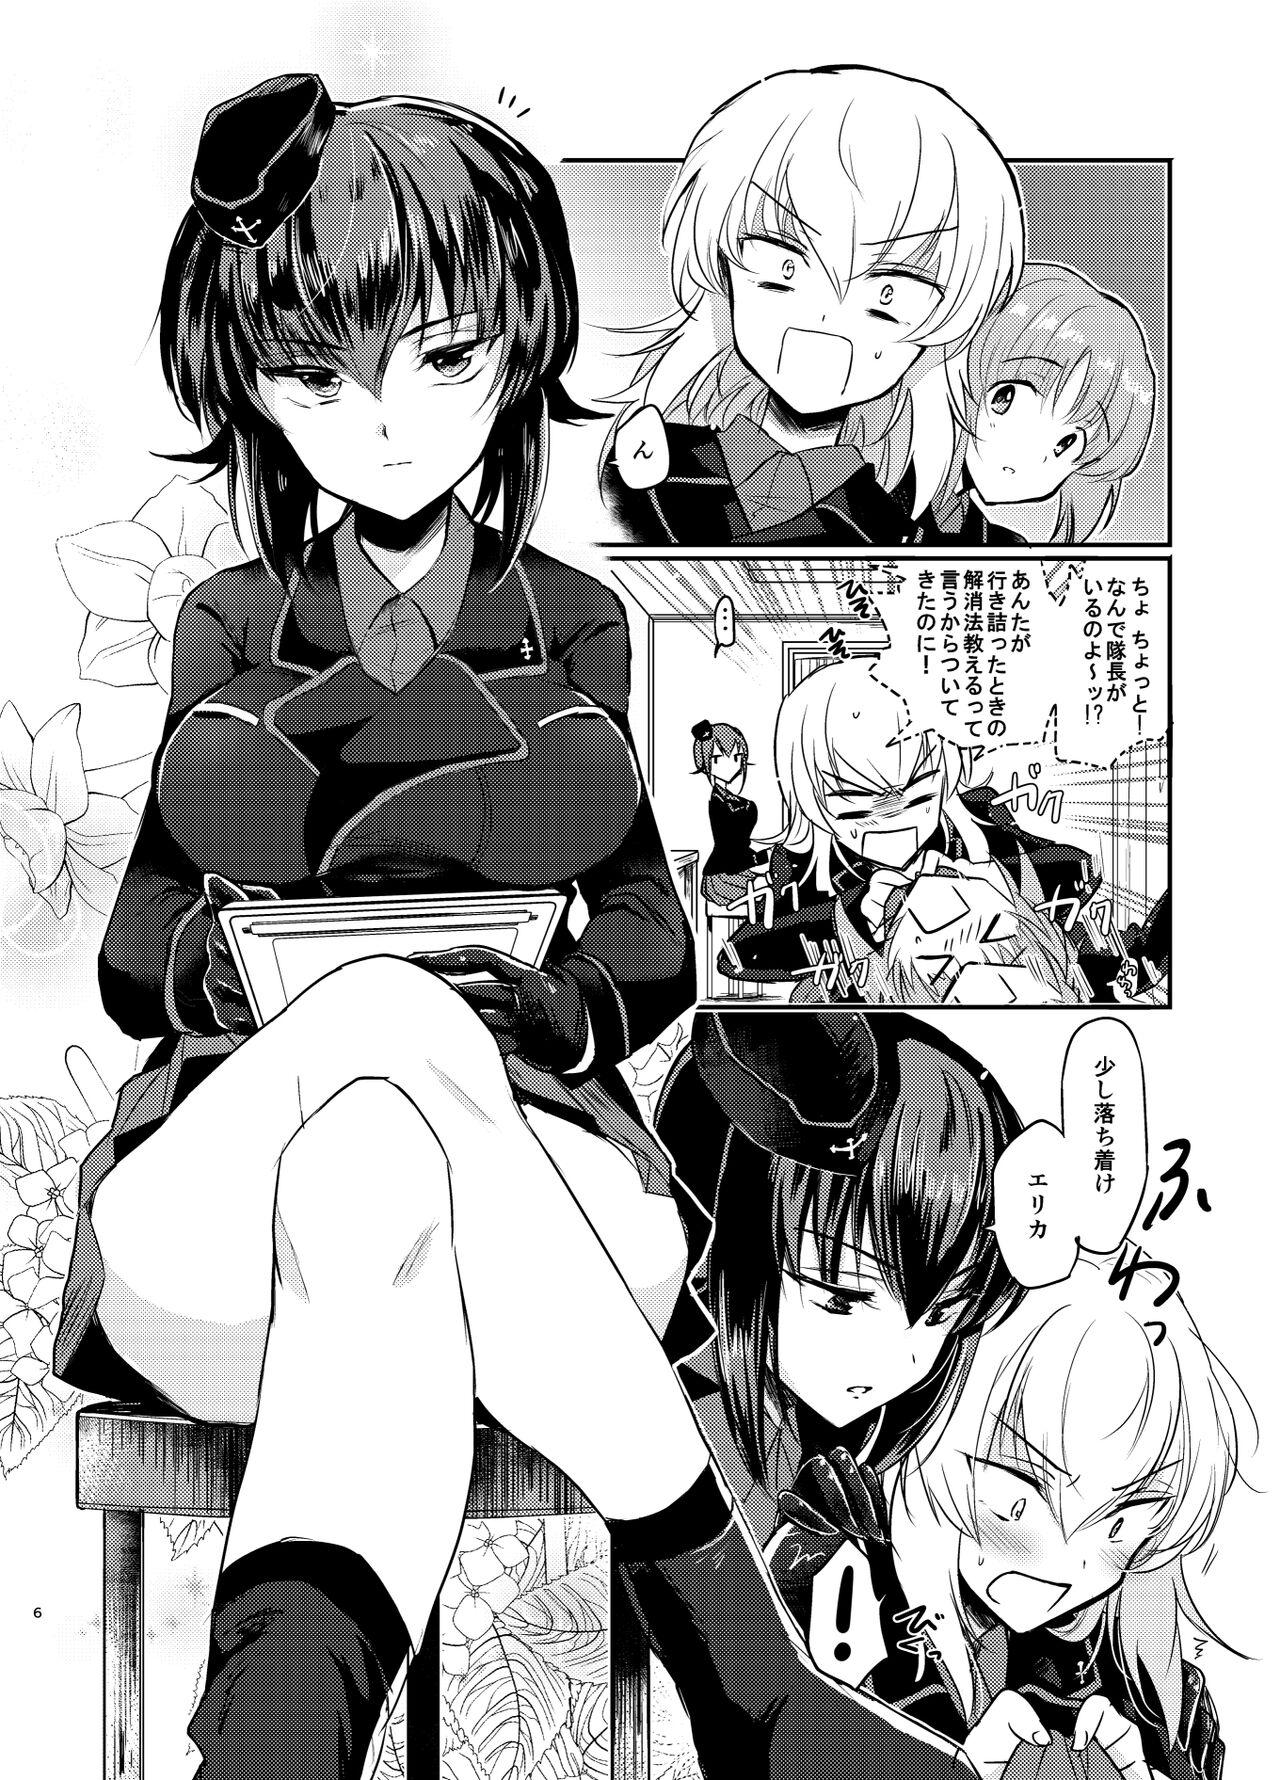 Sologirl Nishizumi Refre - Girls und panzer Stranger - Page 6